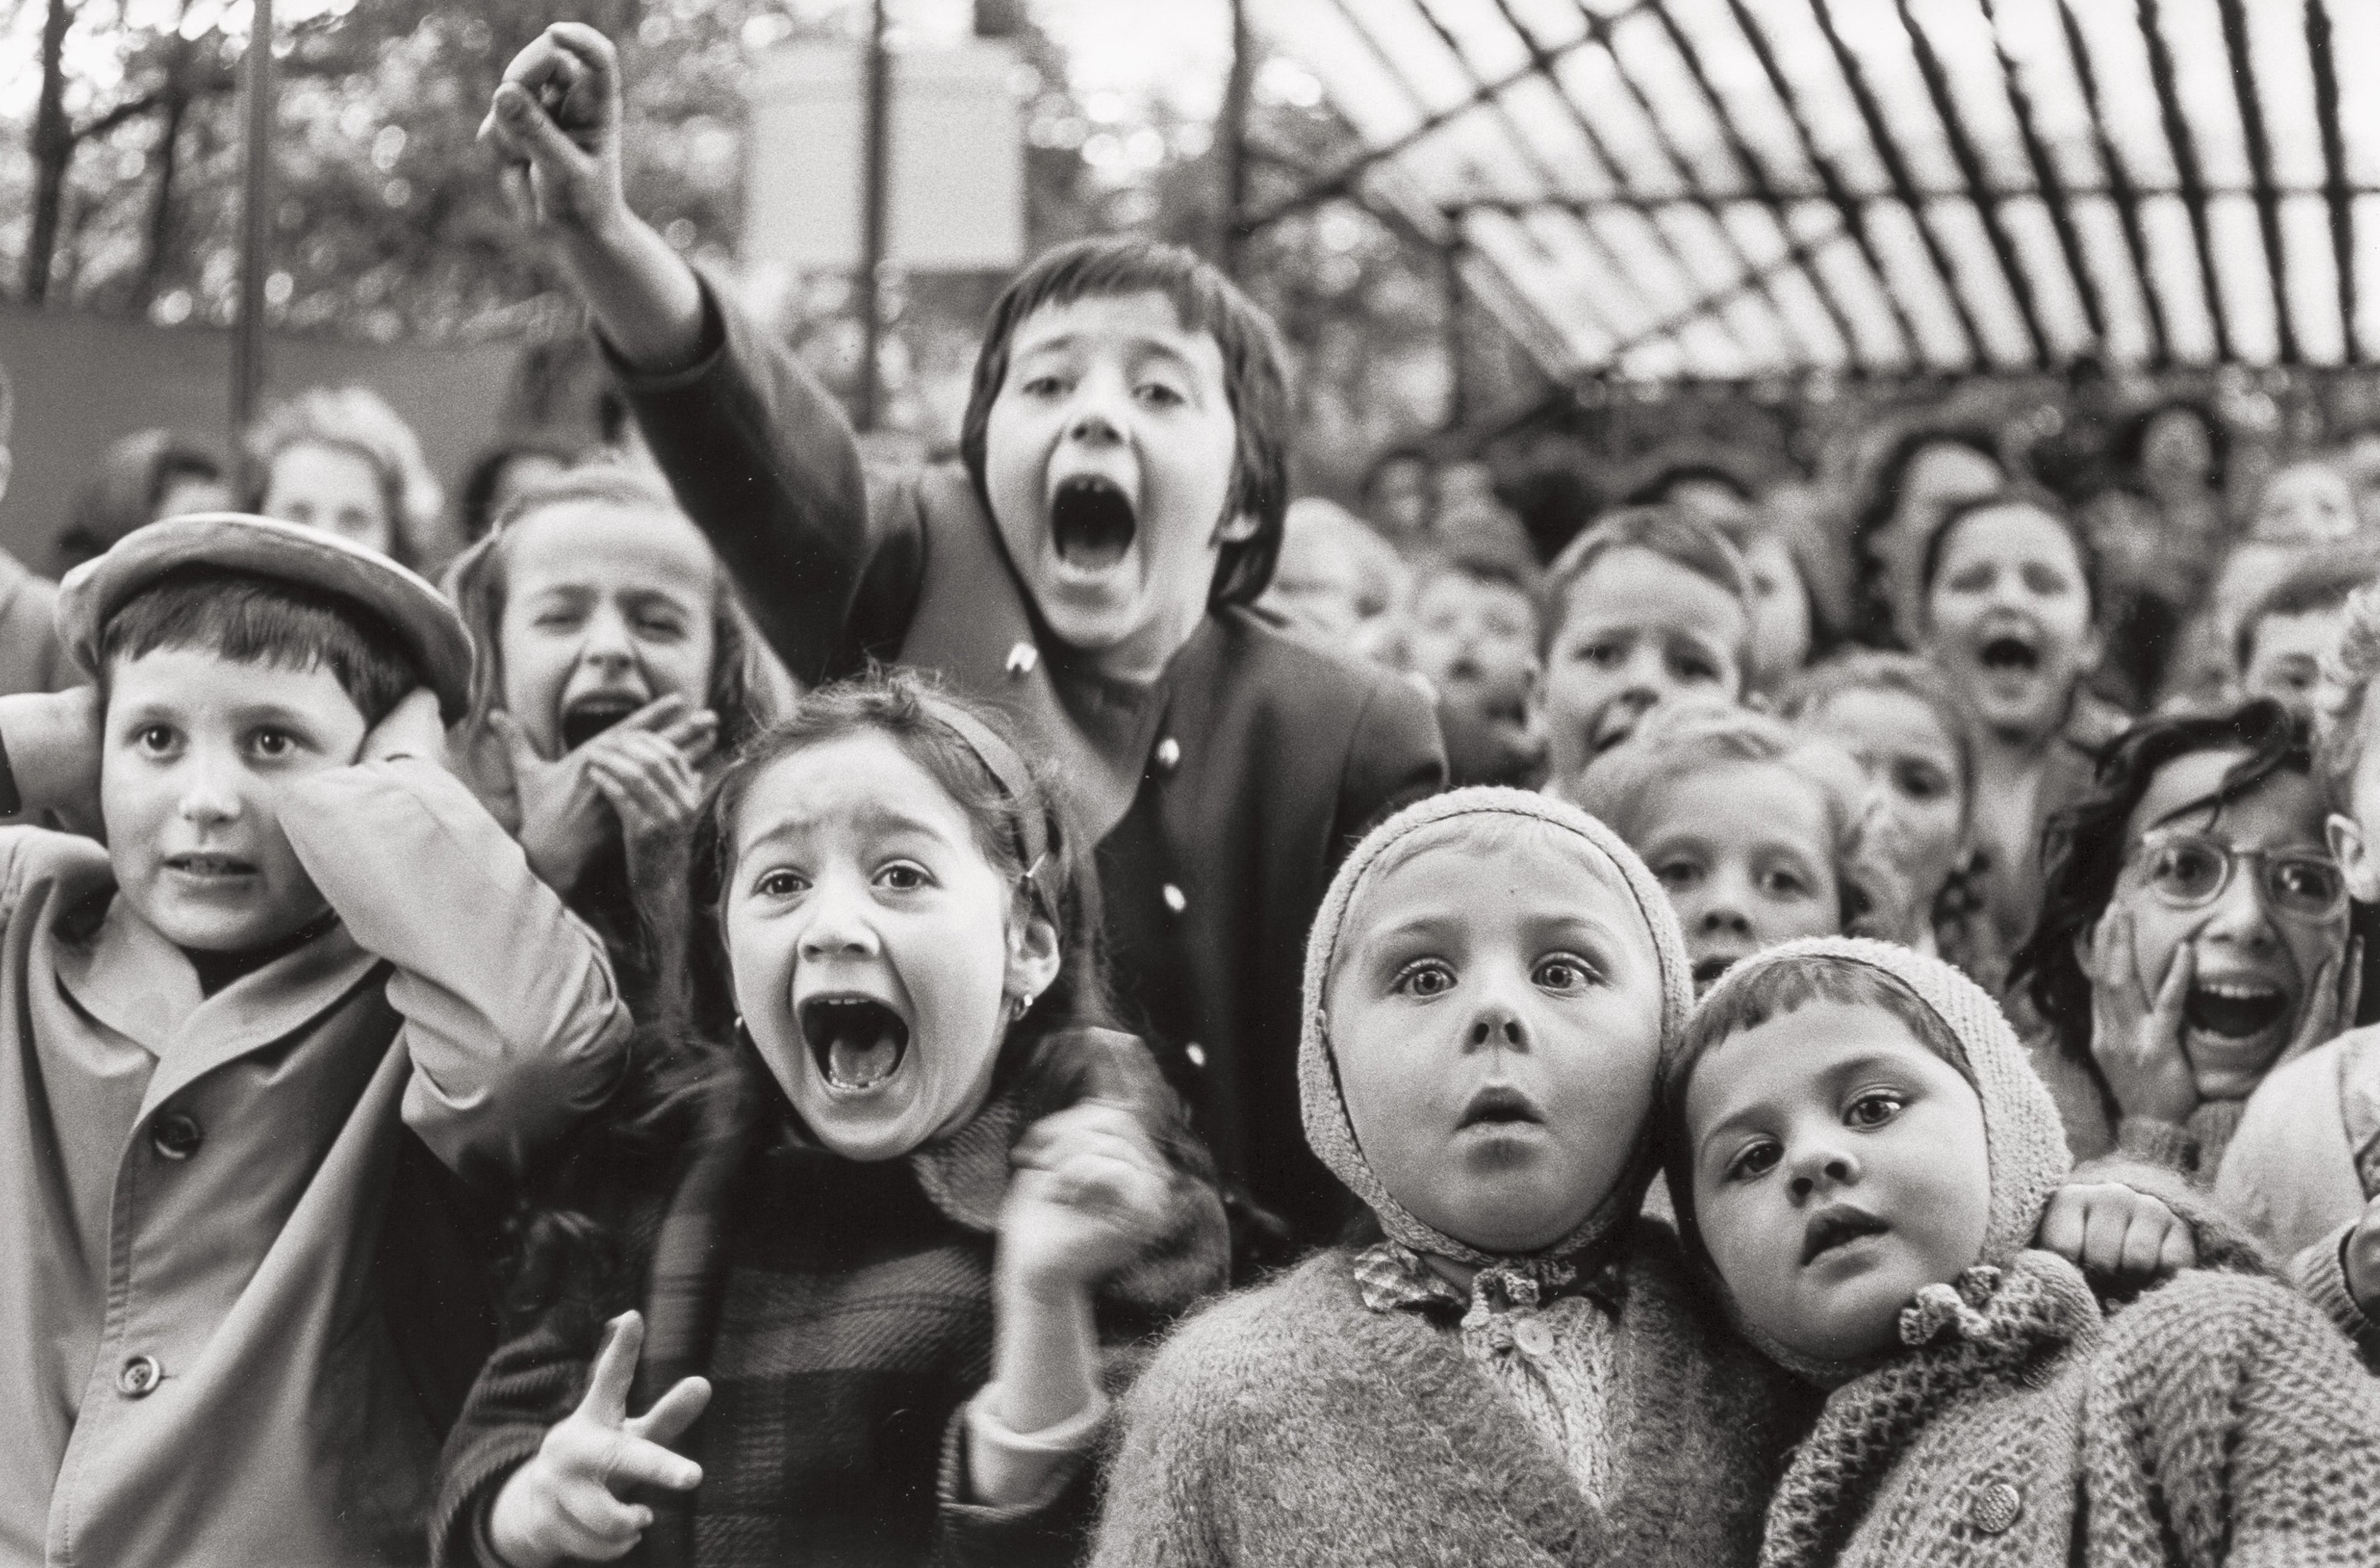 Дети в кукольном театре, Париж, 1963. Фотограф Альфред Эйзенштадт